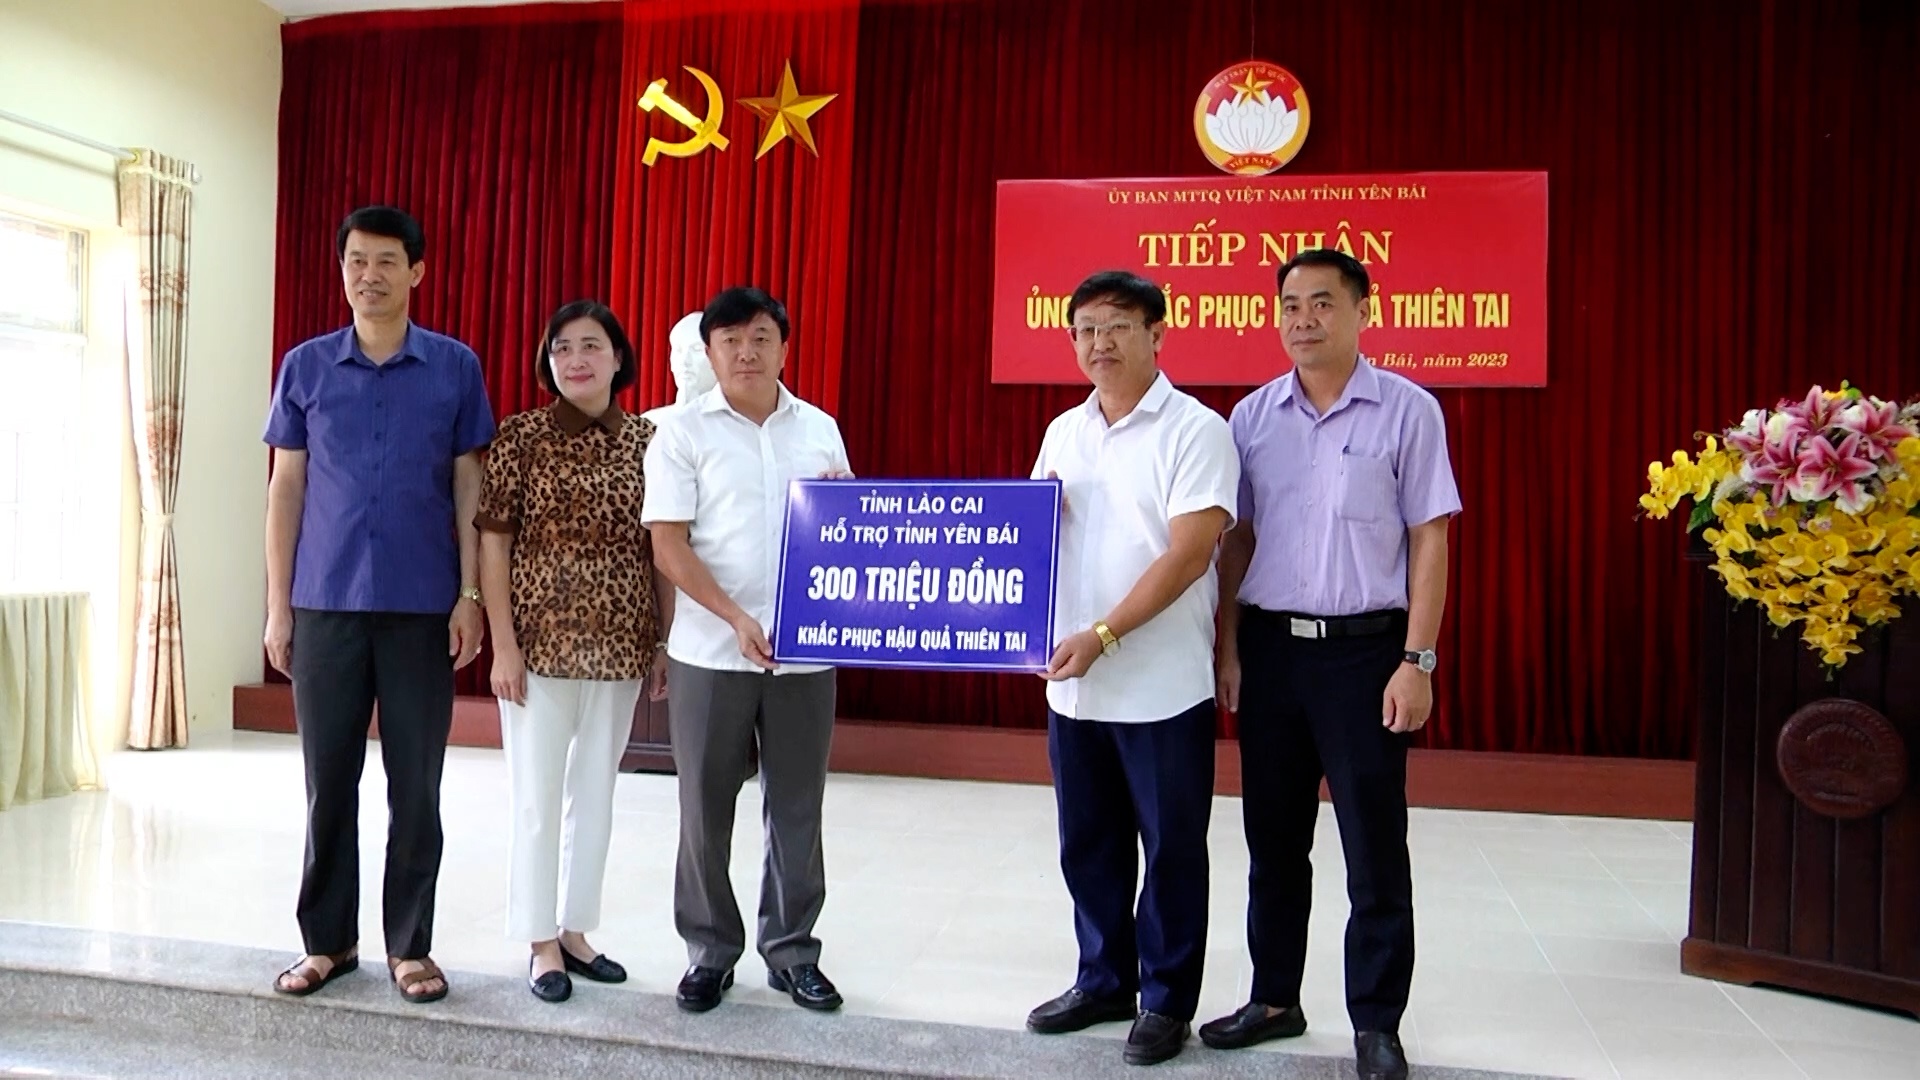 Tỉnh Lào Cai hỗ trợ tỉnh Yên Bái 300 triệu đồng khắc phục hậu quả thiên tai tại huyện Mù Cang Chải